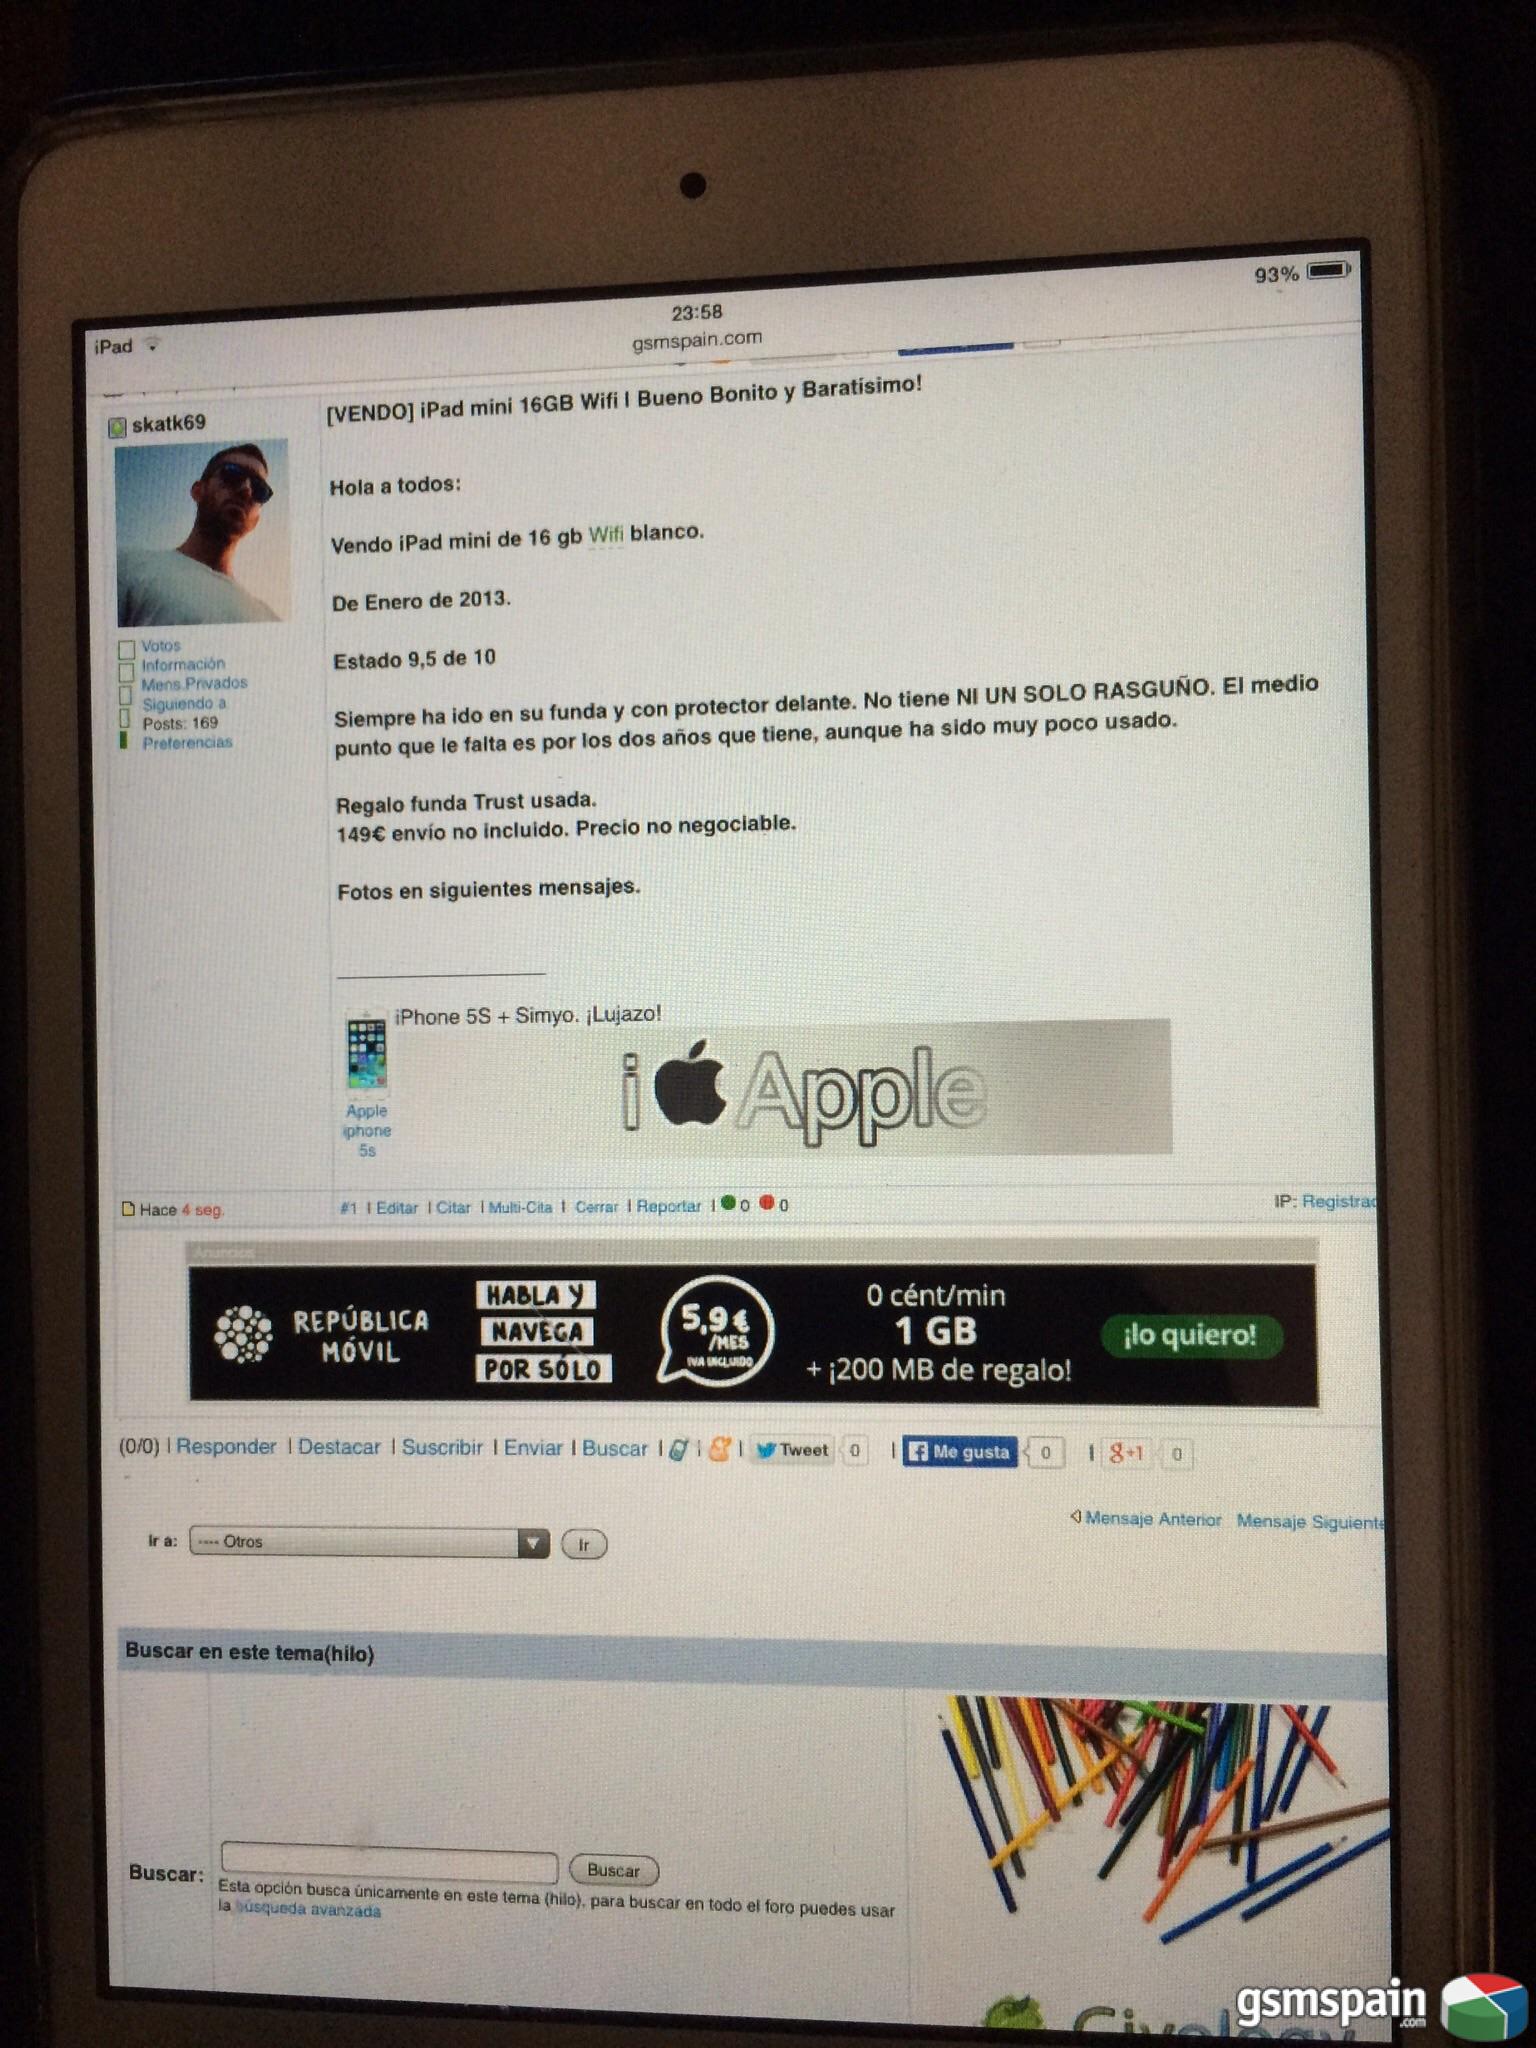 [VENDO] iPad mini 16GB Wifi | Bueno Bonito y Baratsimo!